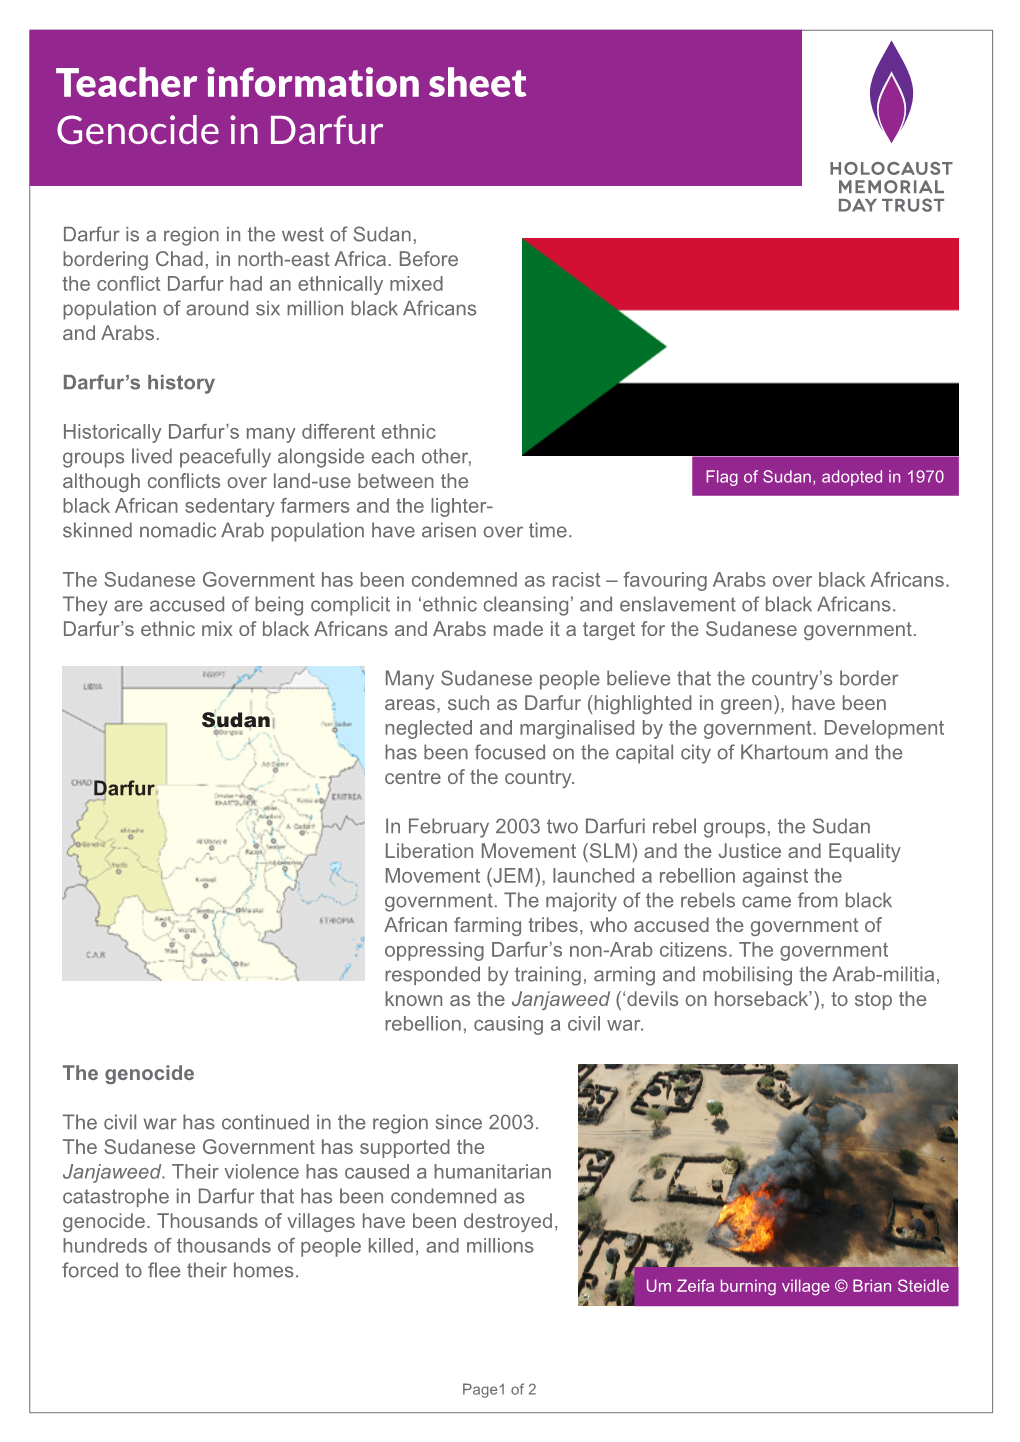 Teacher Information Sheet Genocide in Darfur